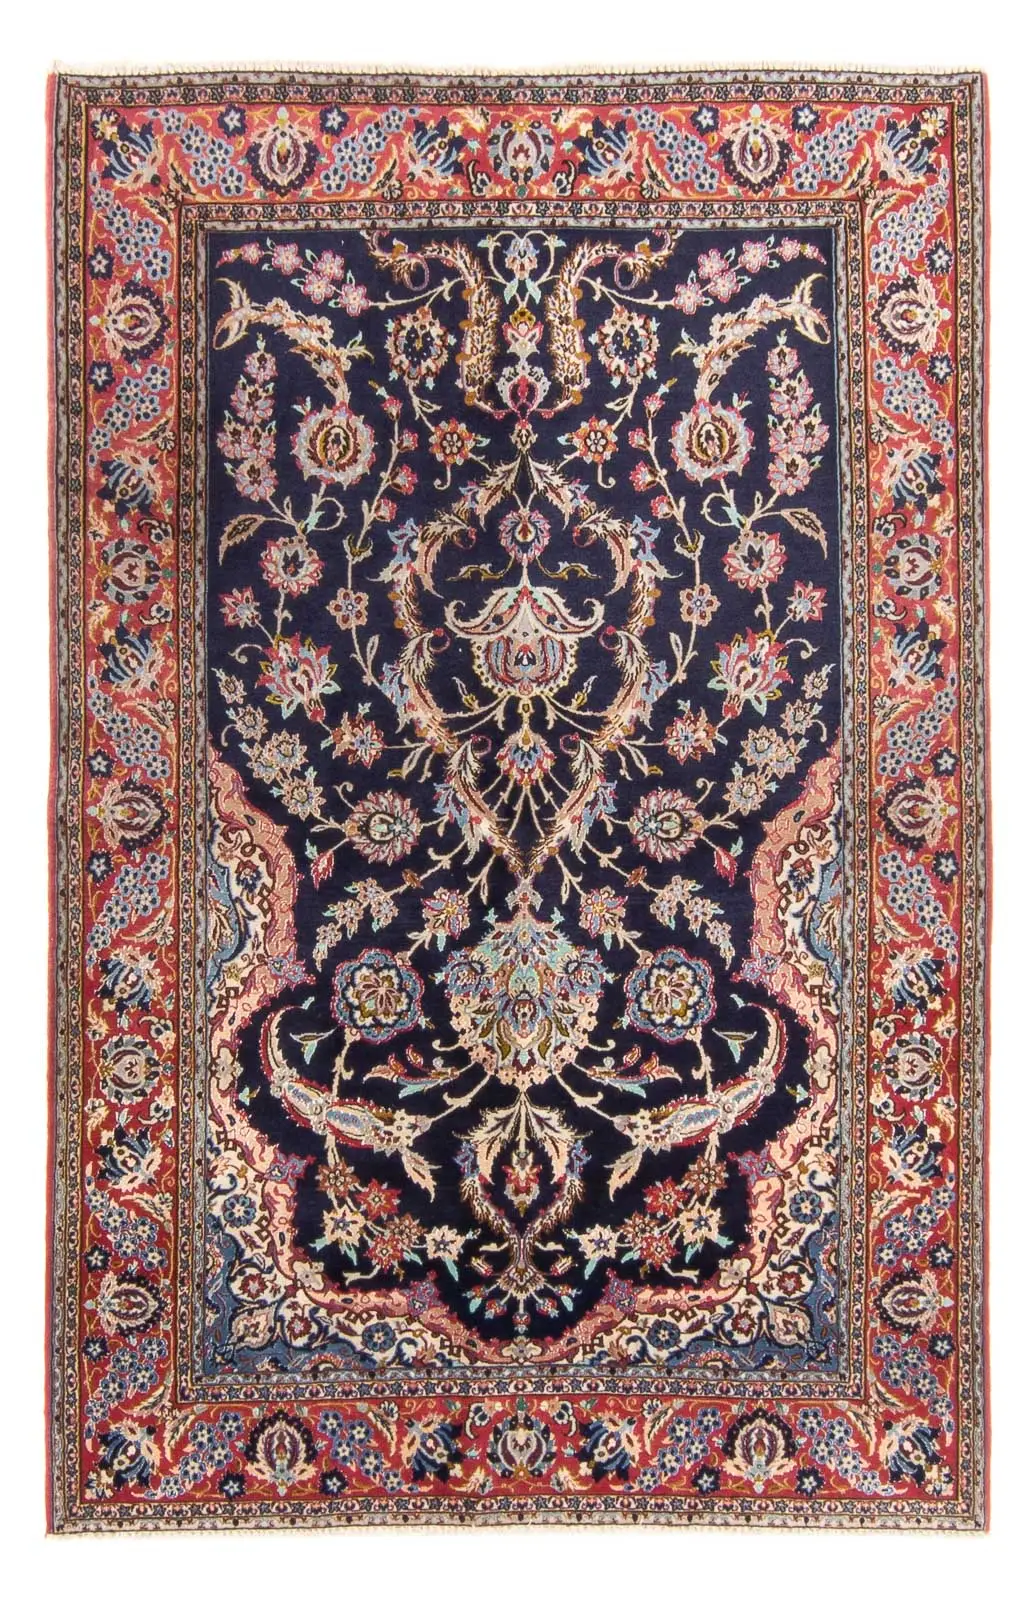 Isfahan - 170x110cm